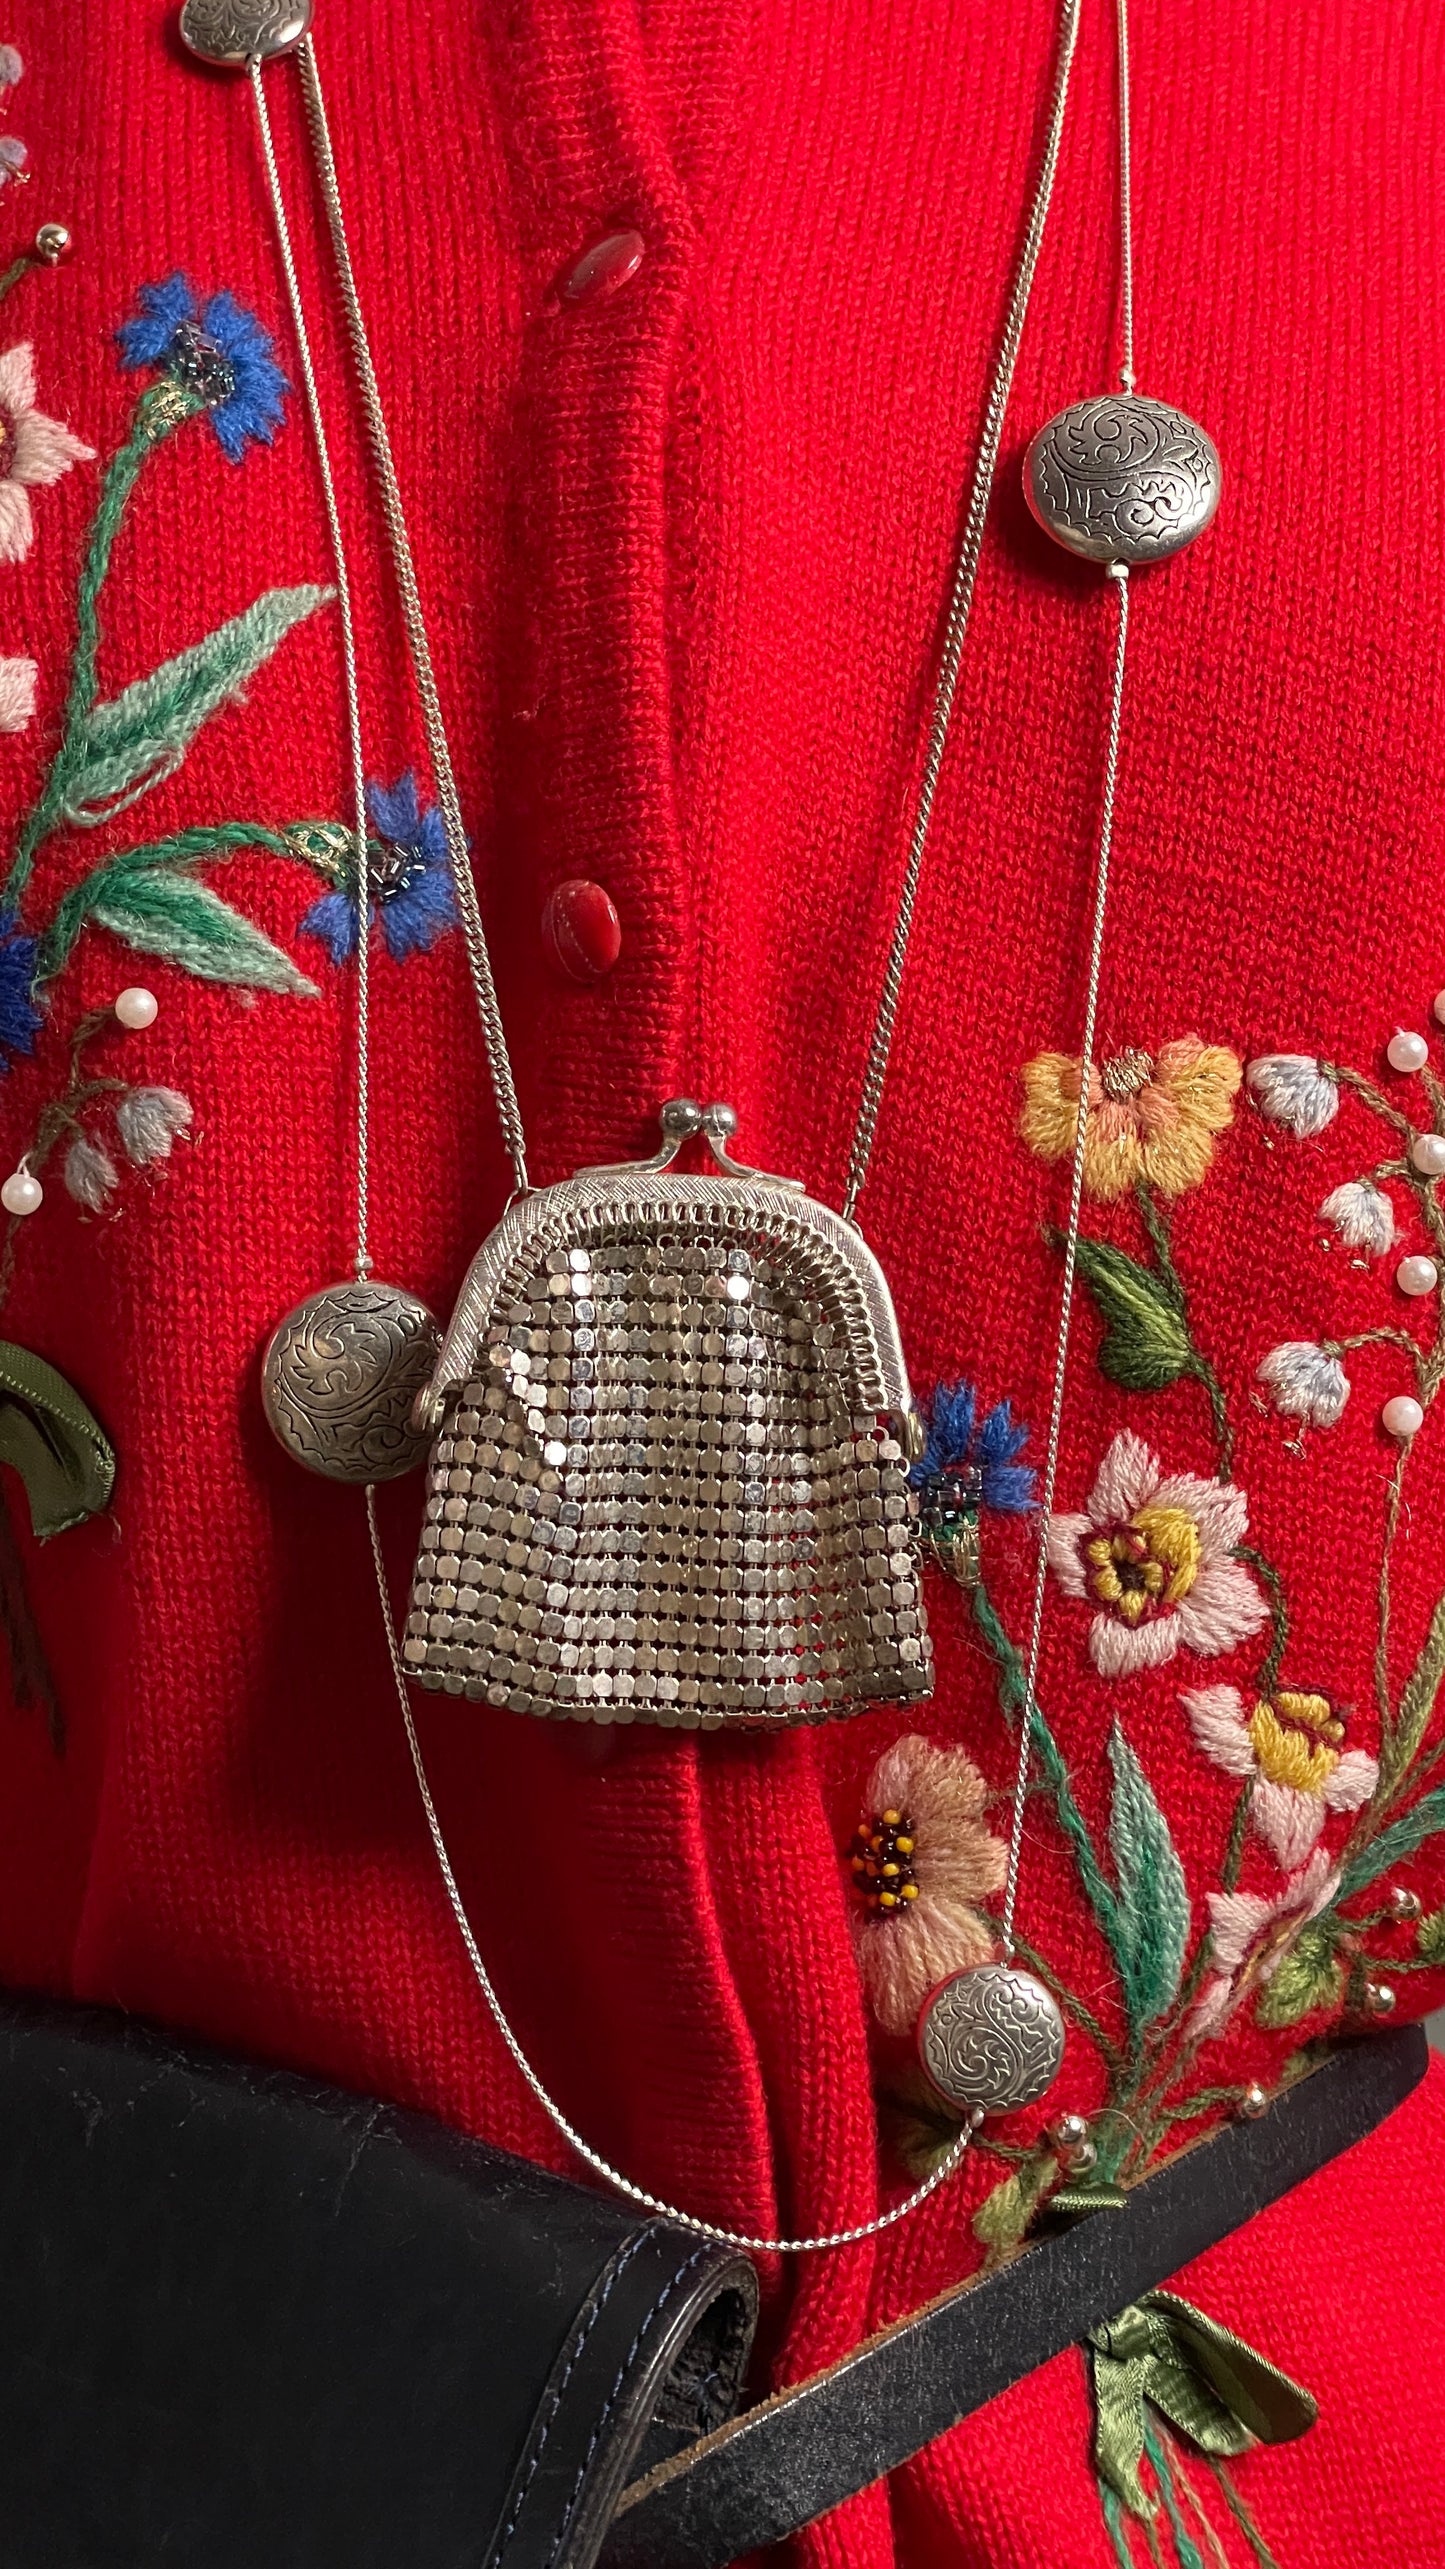 Mini purse necklace